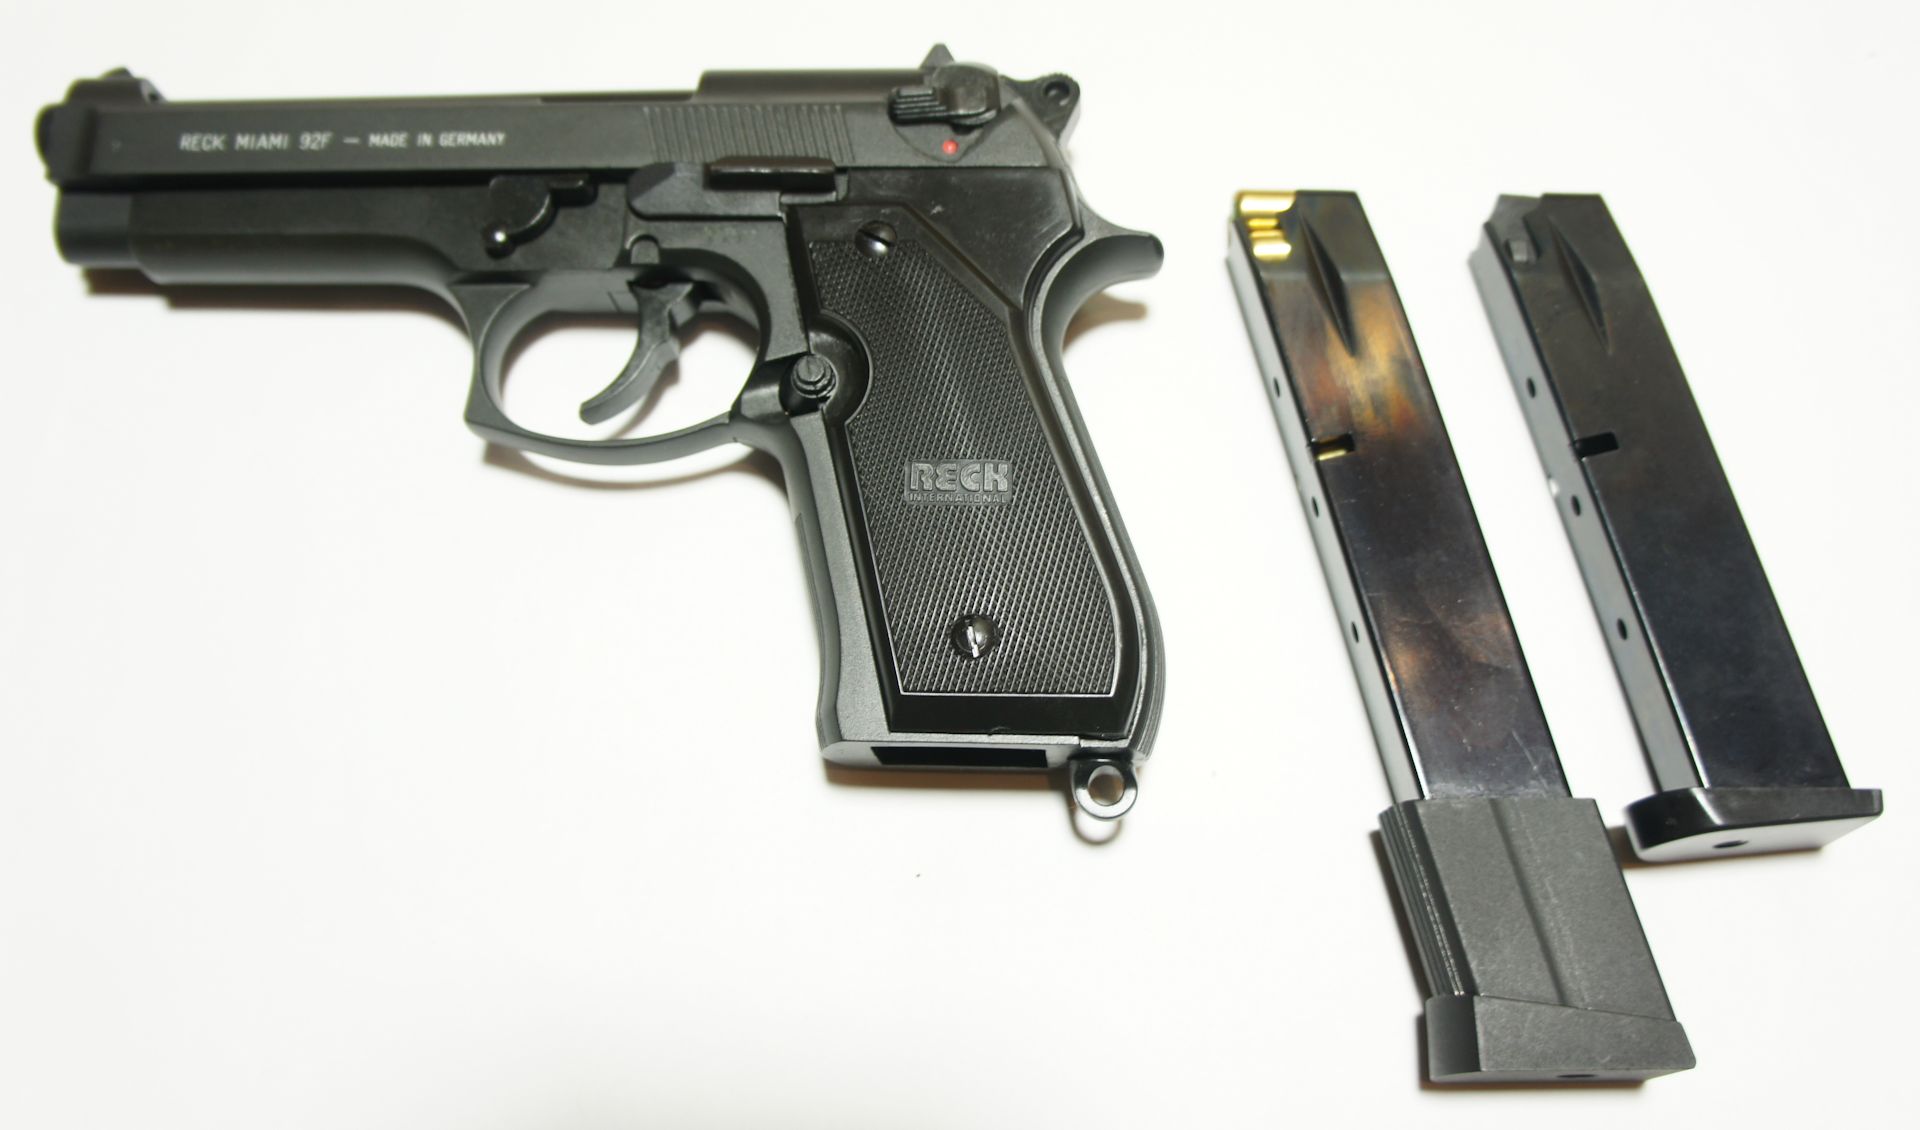 Abbildung der passenden Pistole Reck Miamy und Vergleich zum Standardmagazin.